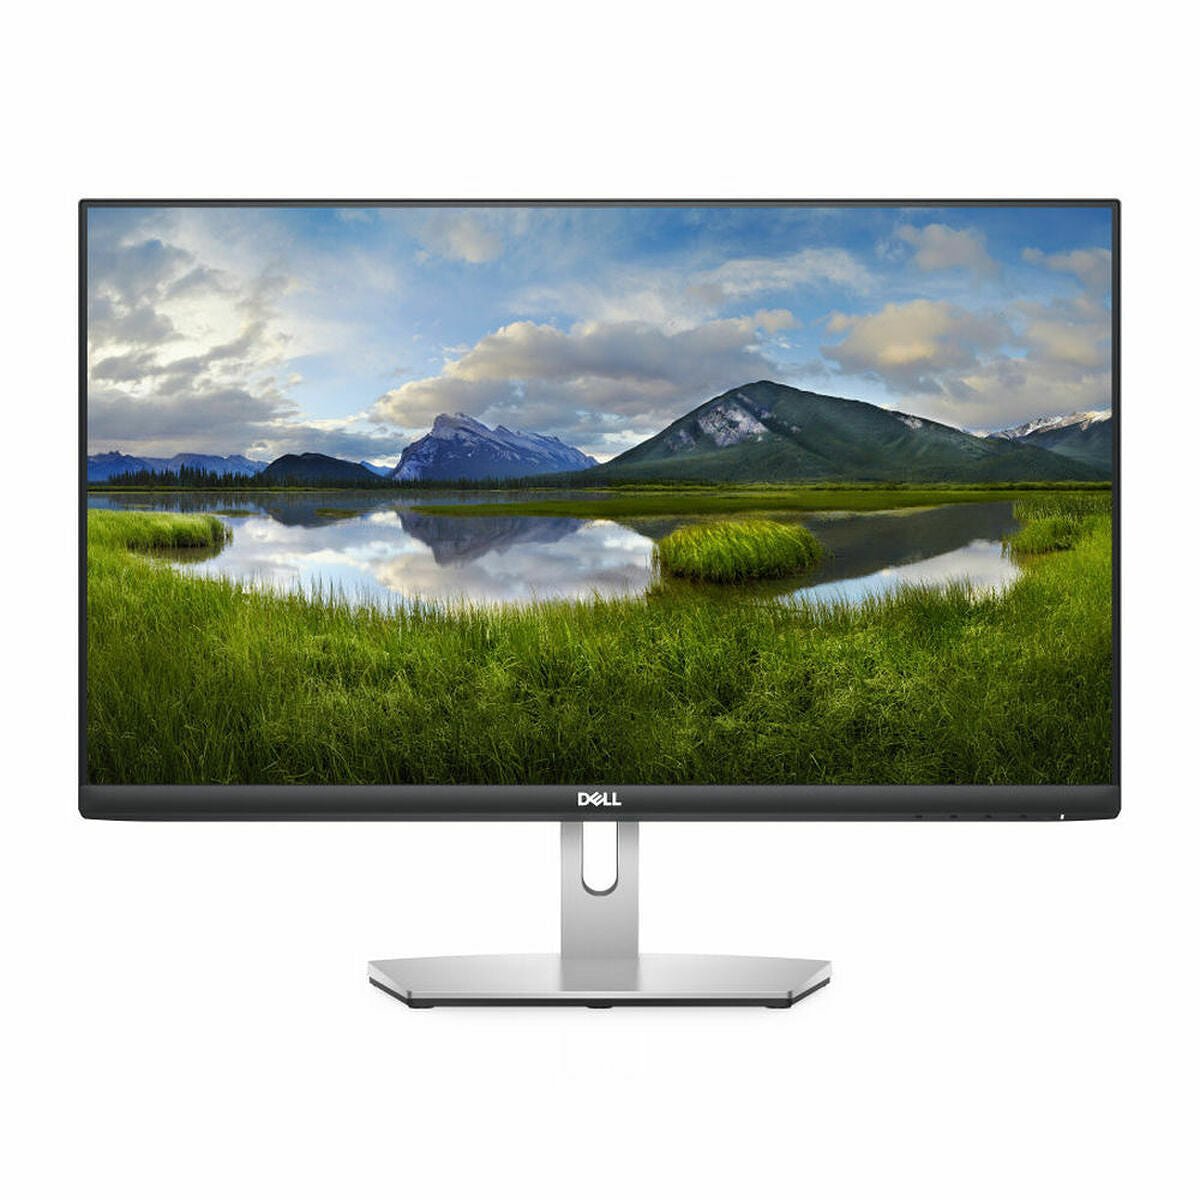 Monitor Dell 210-AXKS 23,8" LED IPS LCD Flicker free 75 Hz